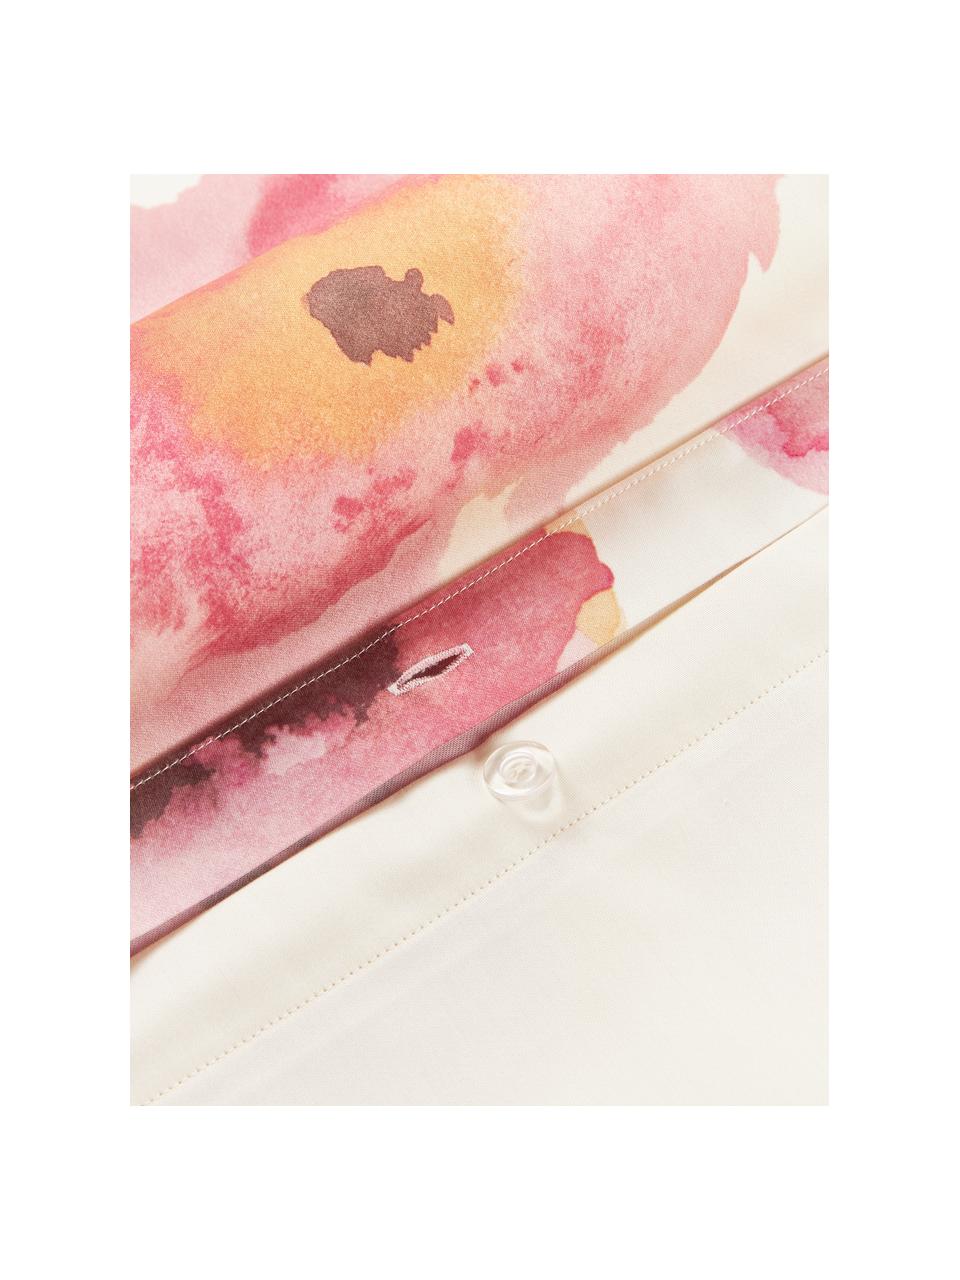 Copripiumino in raso di cotone con stampa floreale Fiorella, Bianco crema, multicolore, Larg. 200 x Lung. 200 cm